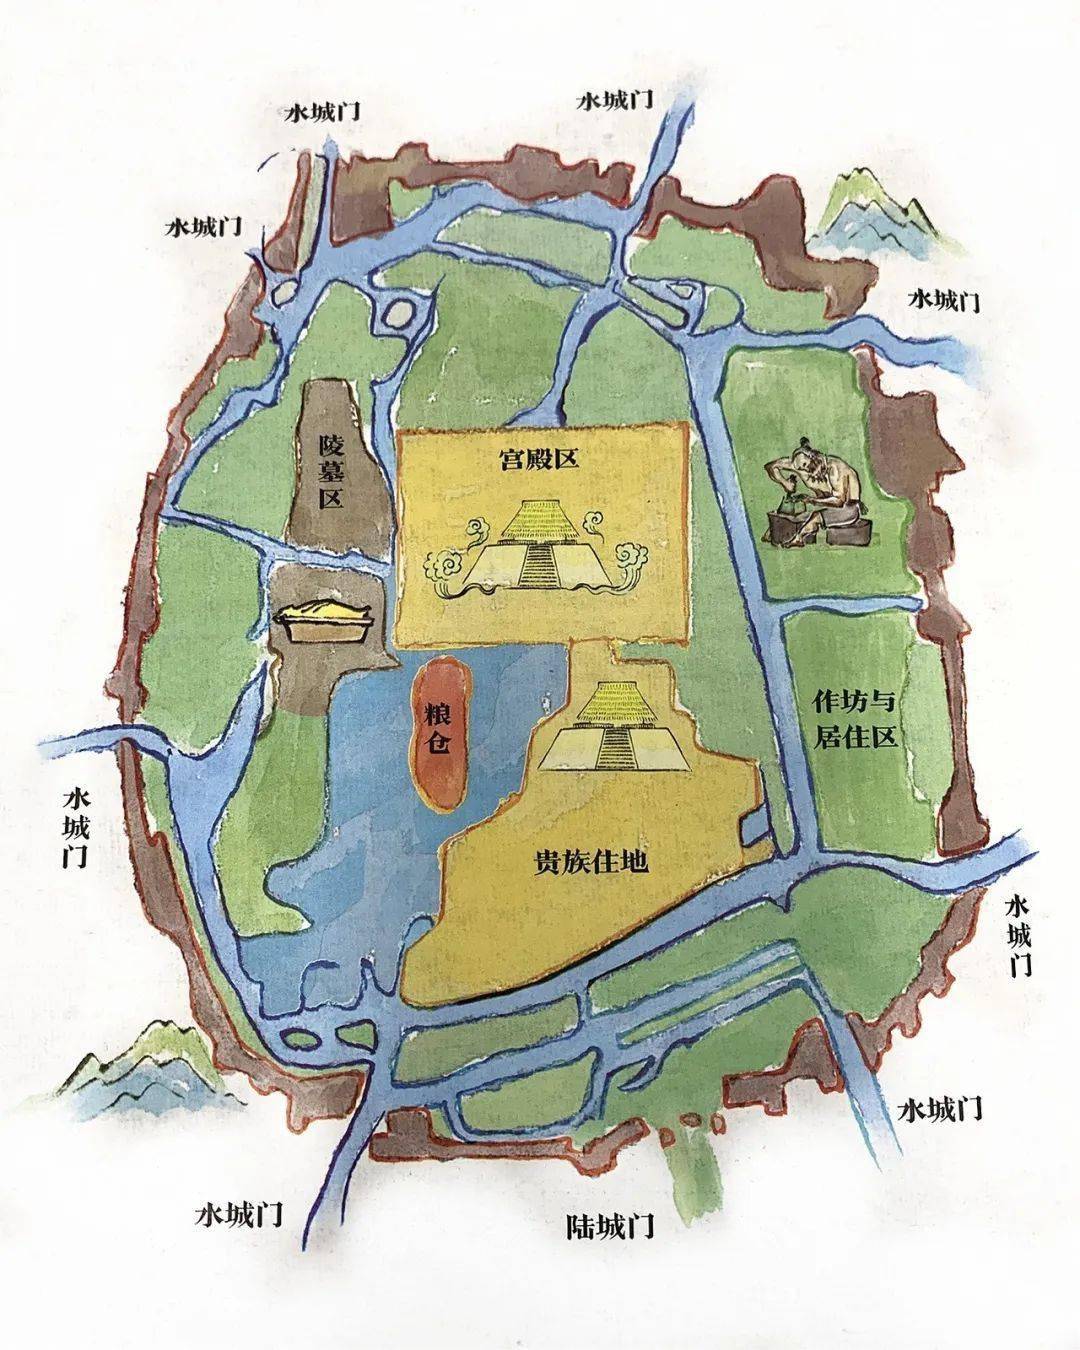 良渚文化村地图高清图片